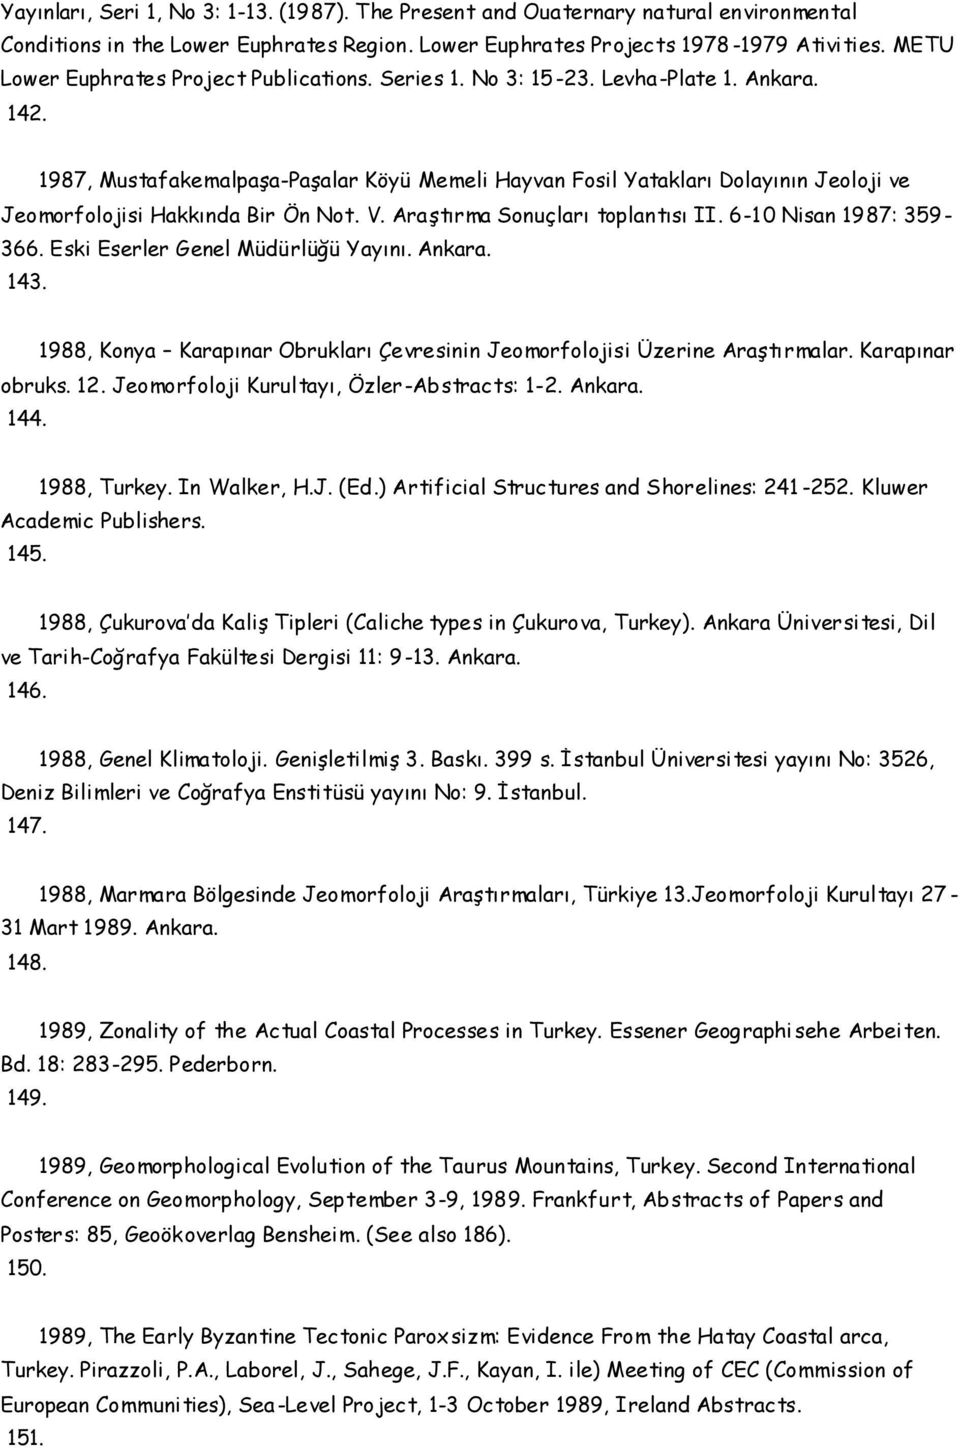 1987, Mustafakemalpaşa-Paşalar Köyü Memeli Hayvan Fosil Yatakları Dolayının Jeoloji ve Jeomorfolojisi Hakkında Bir Ön Not. V. Araştırma Sonuçları toplantısı II. 6-10 Nisan 1987: 359-366.